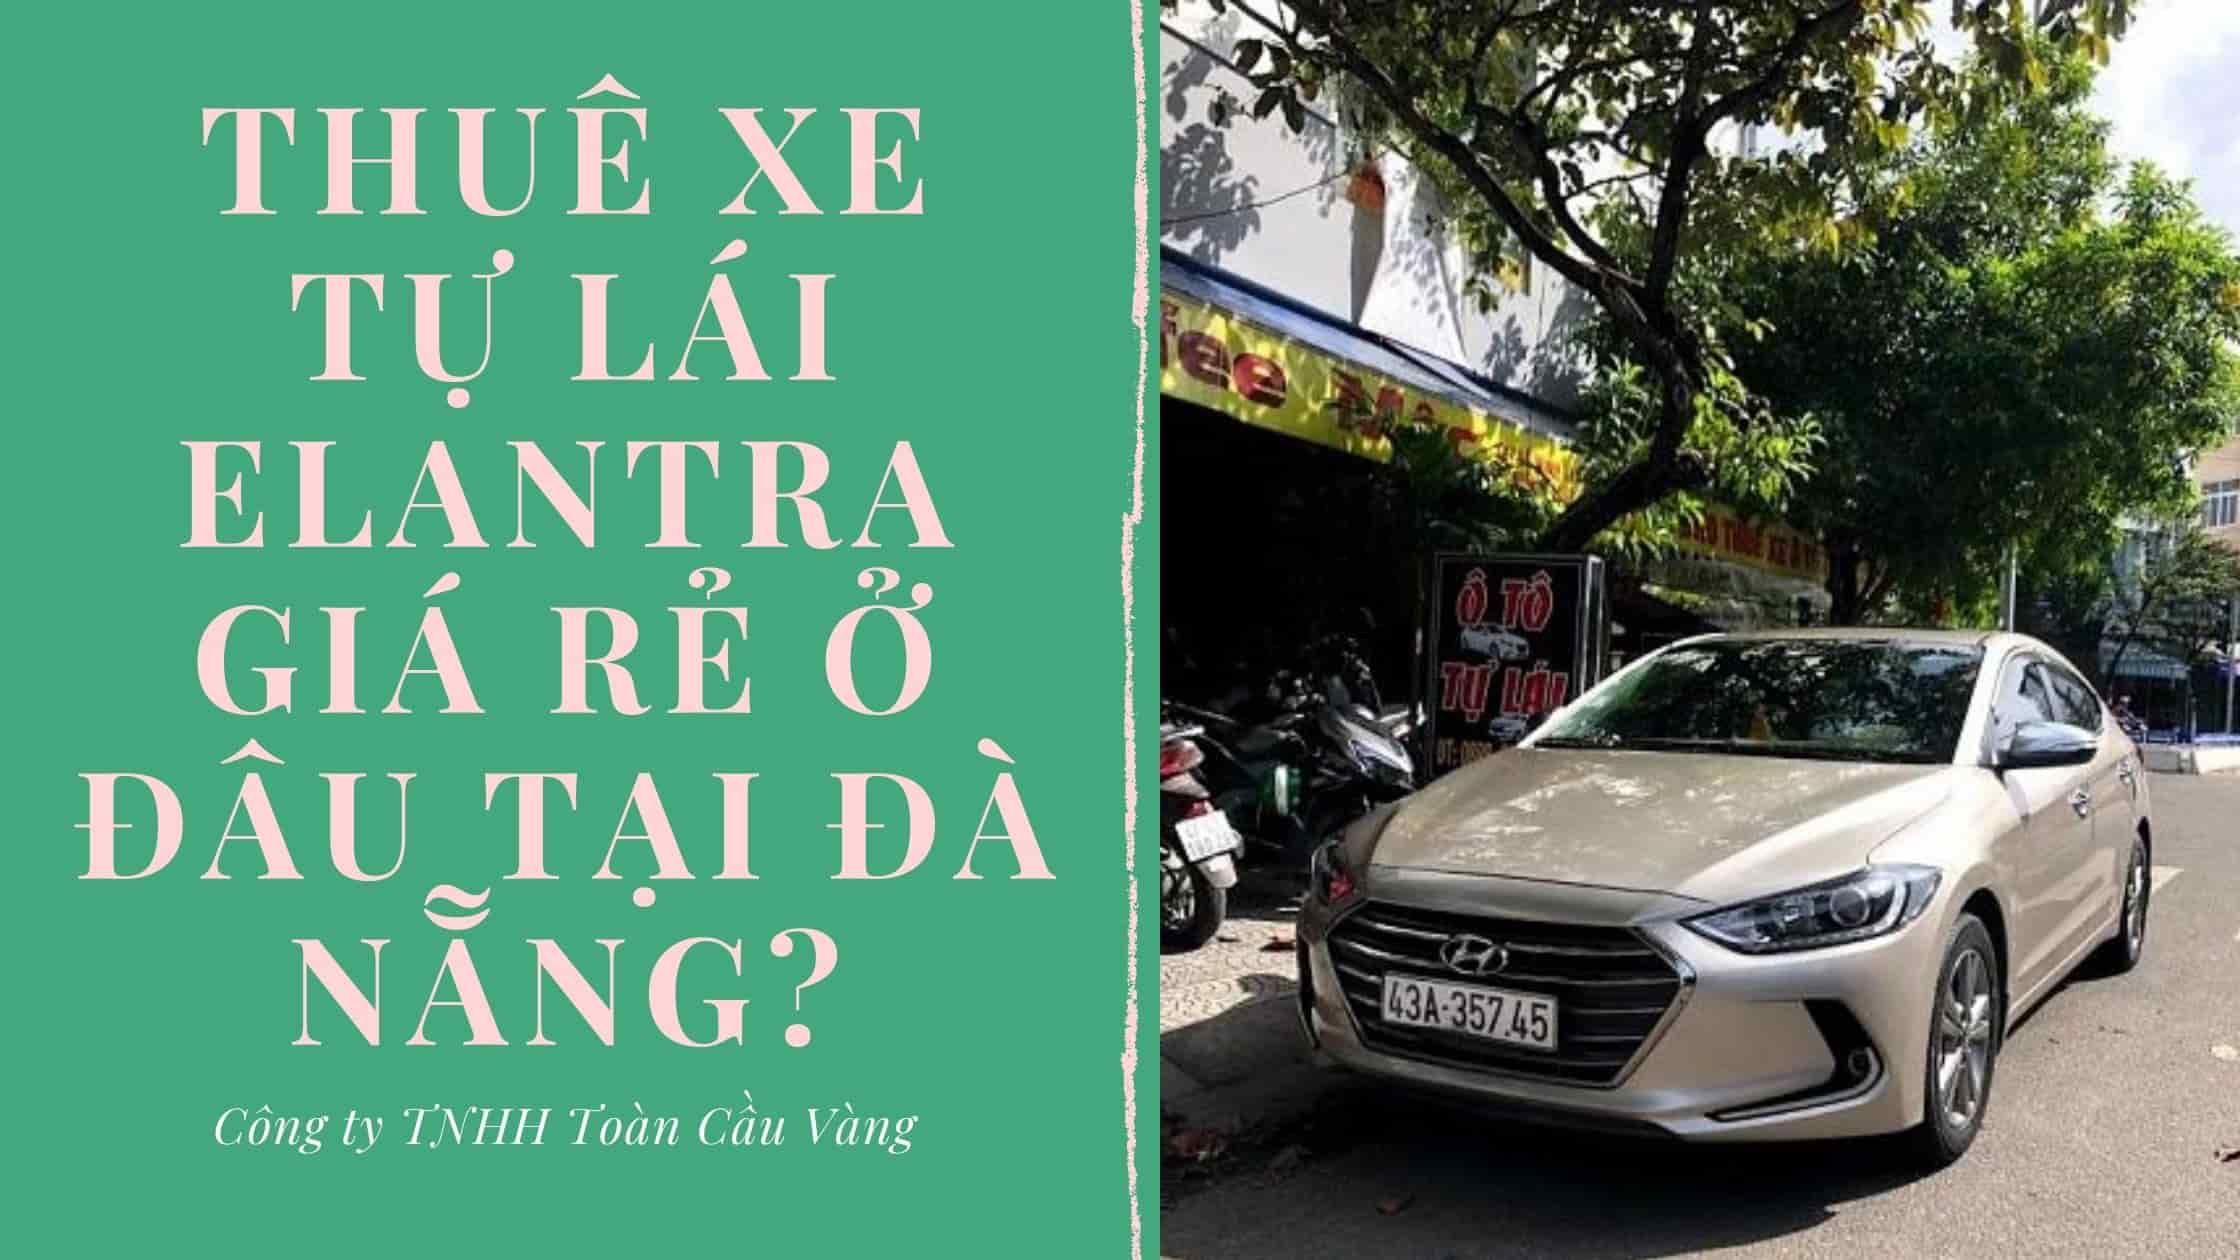 Thuê xe tự lái Elantra giá rẻ Đà Nẵng